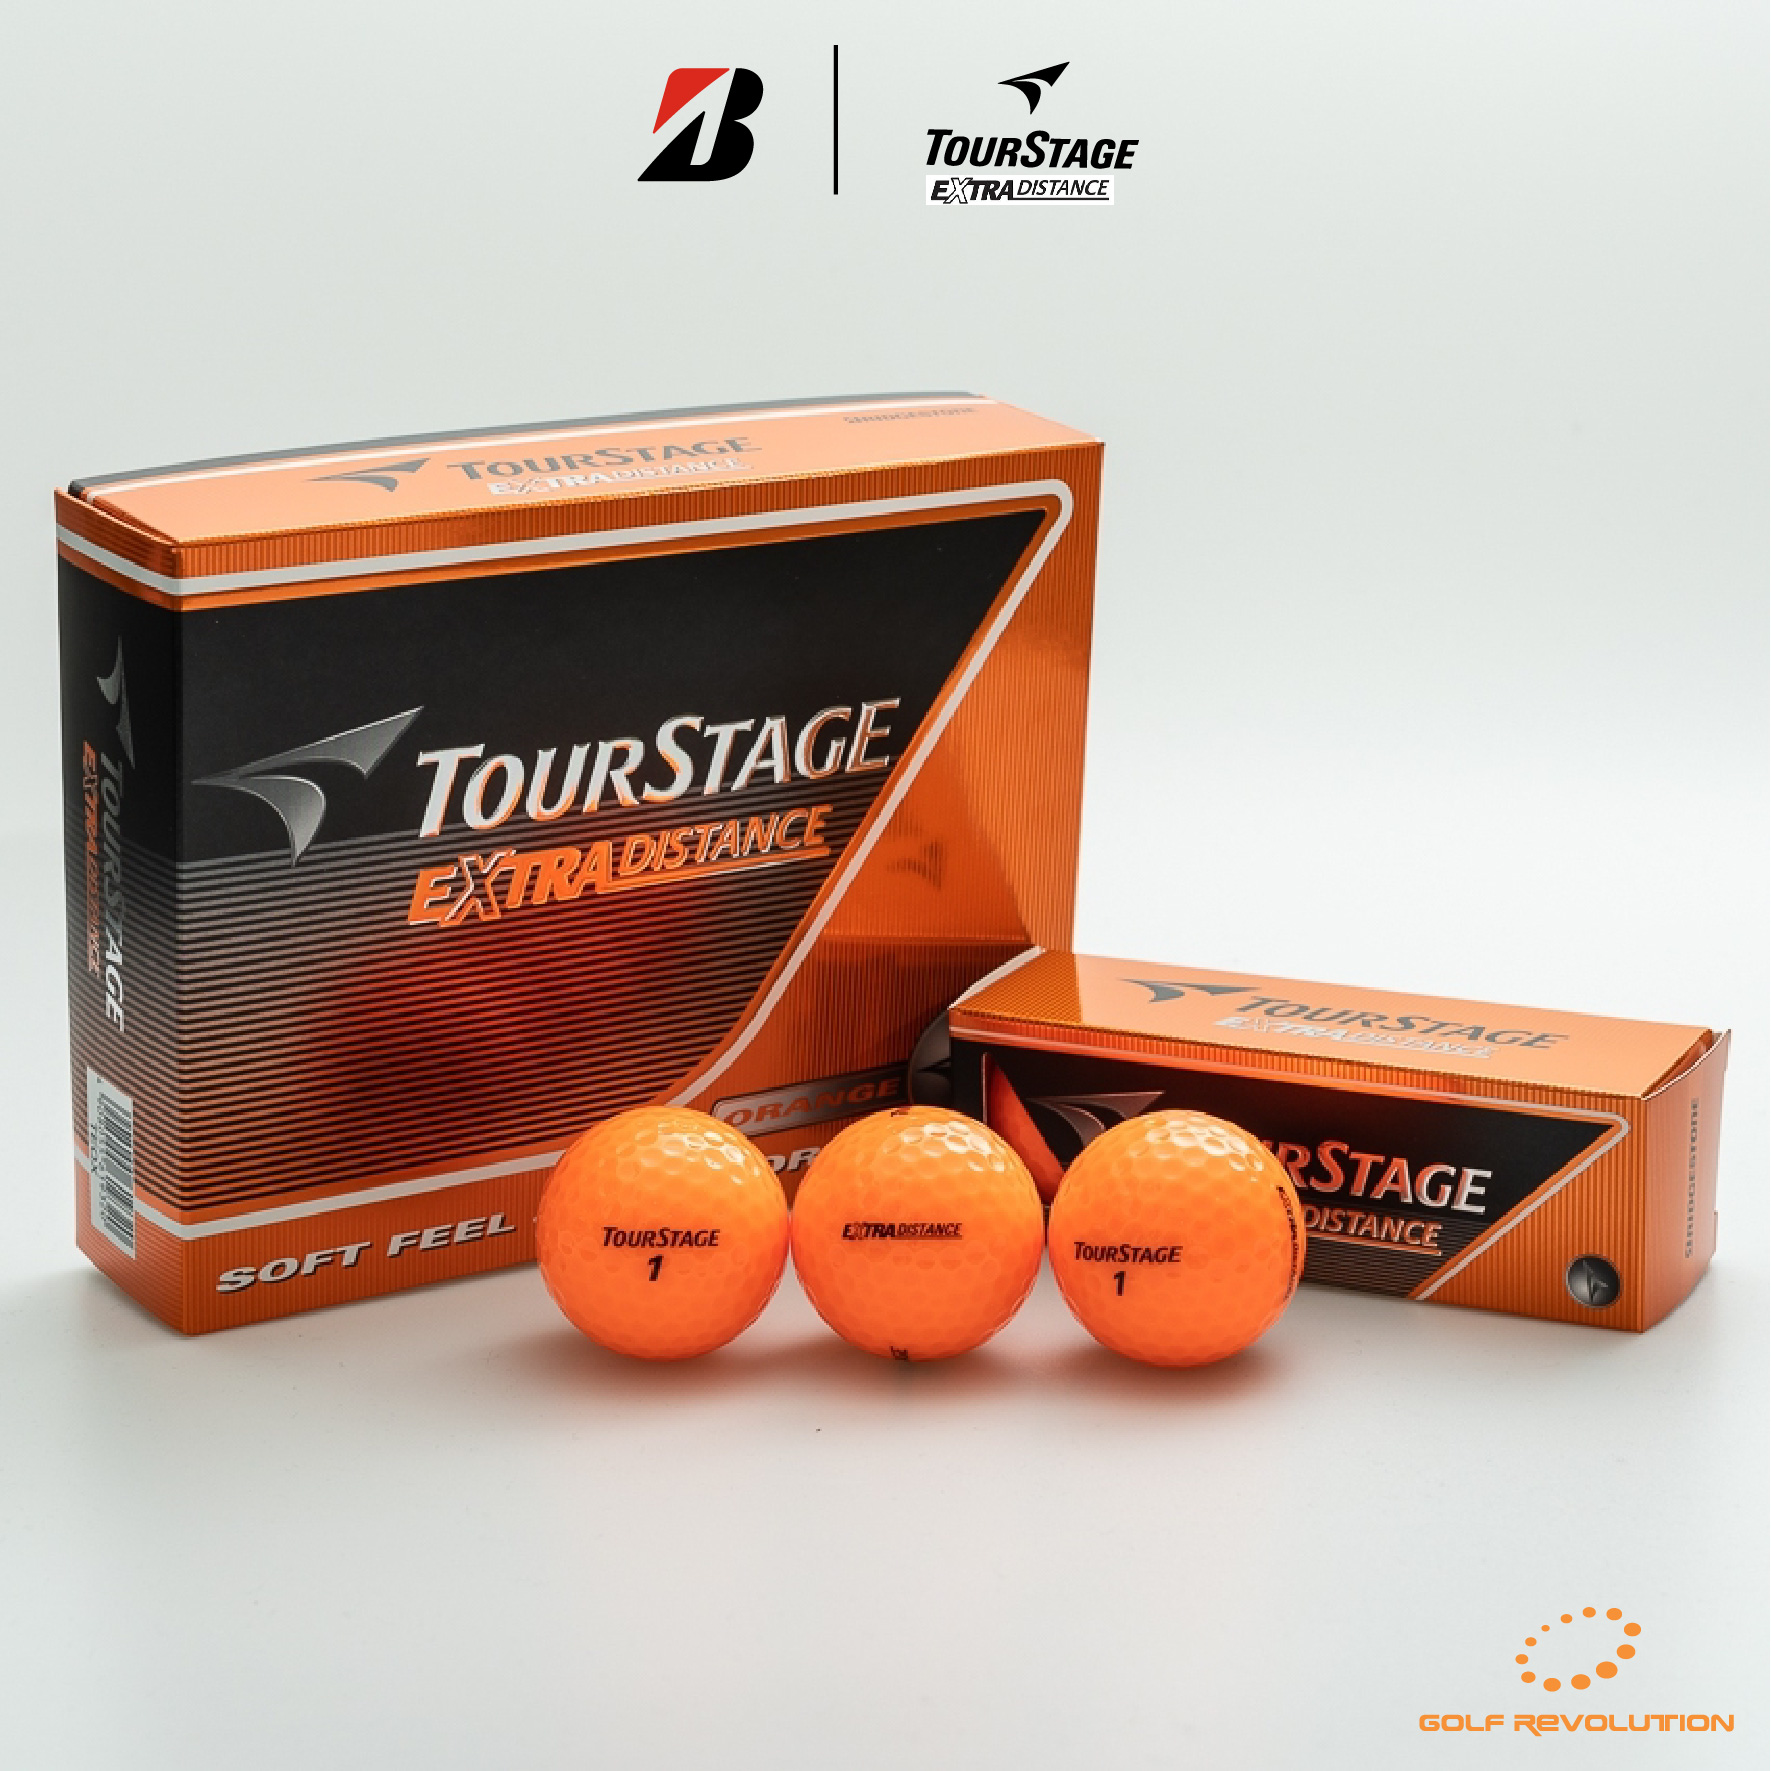 ลูกกอล์ฟ TourStage - Extra Distance Orange ซื้อ 2 แถม 1, Price: 690 THB/dz  (Promotion : Buy2, Free1)